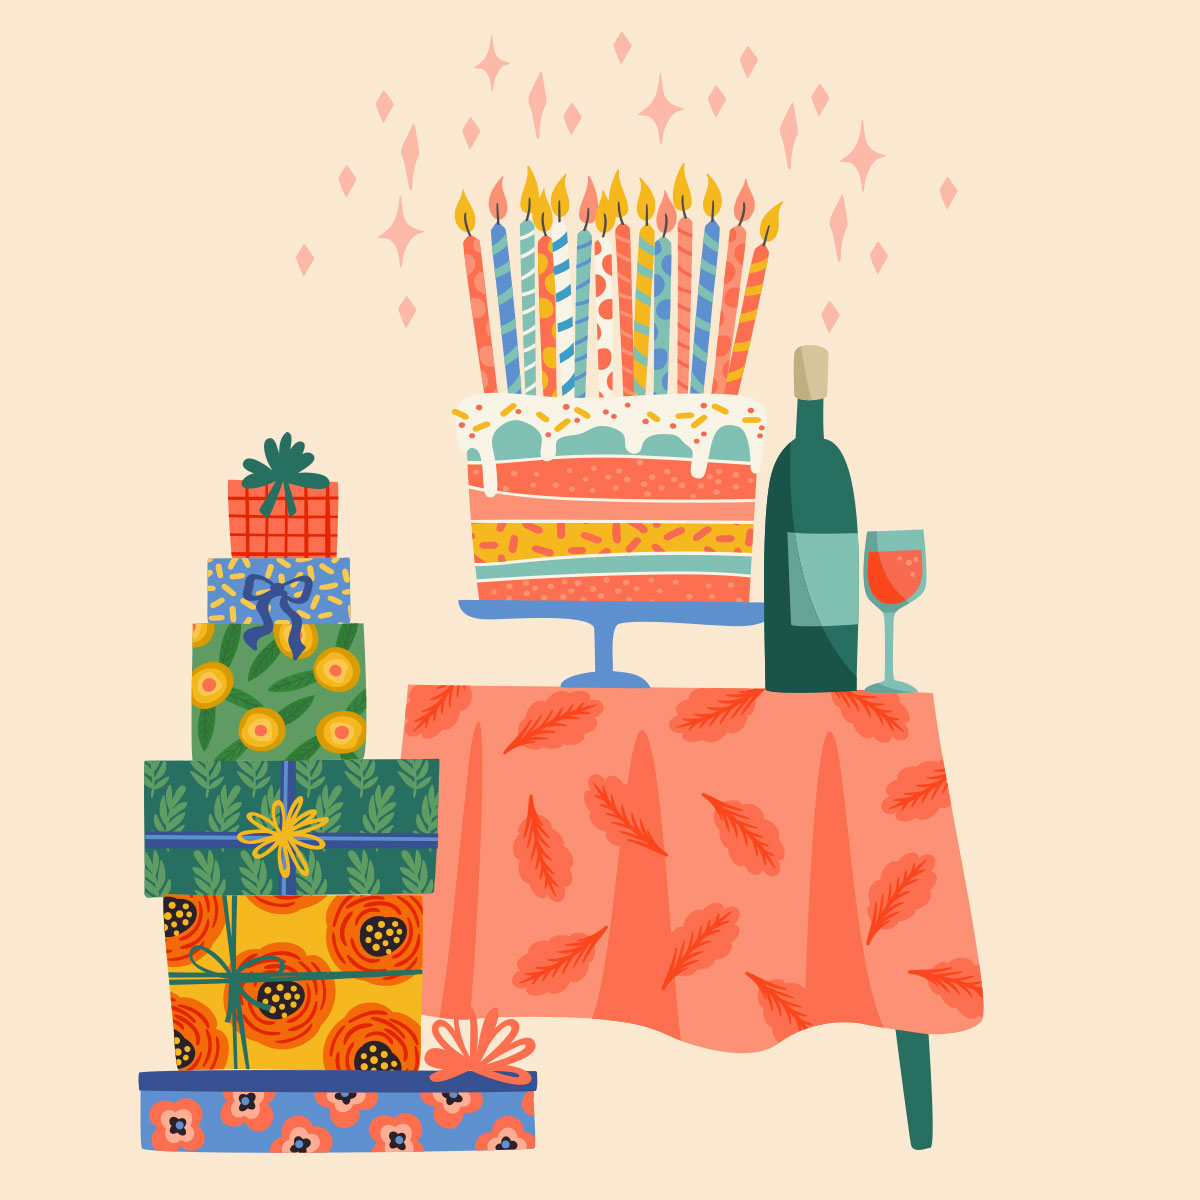 Открытка без текста с тортом, подарками и бутылкой вина на столе для поздравления с днем рождения.